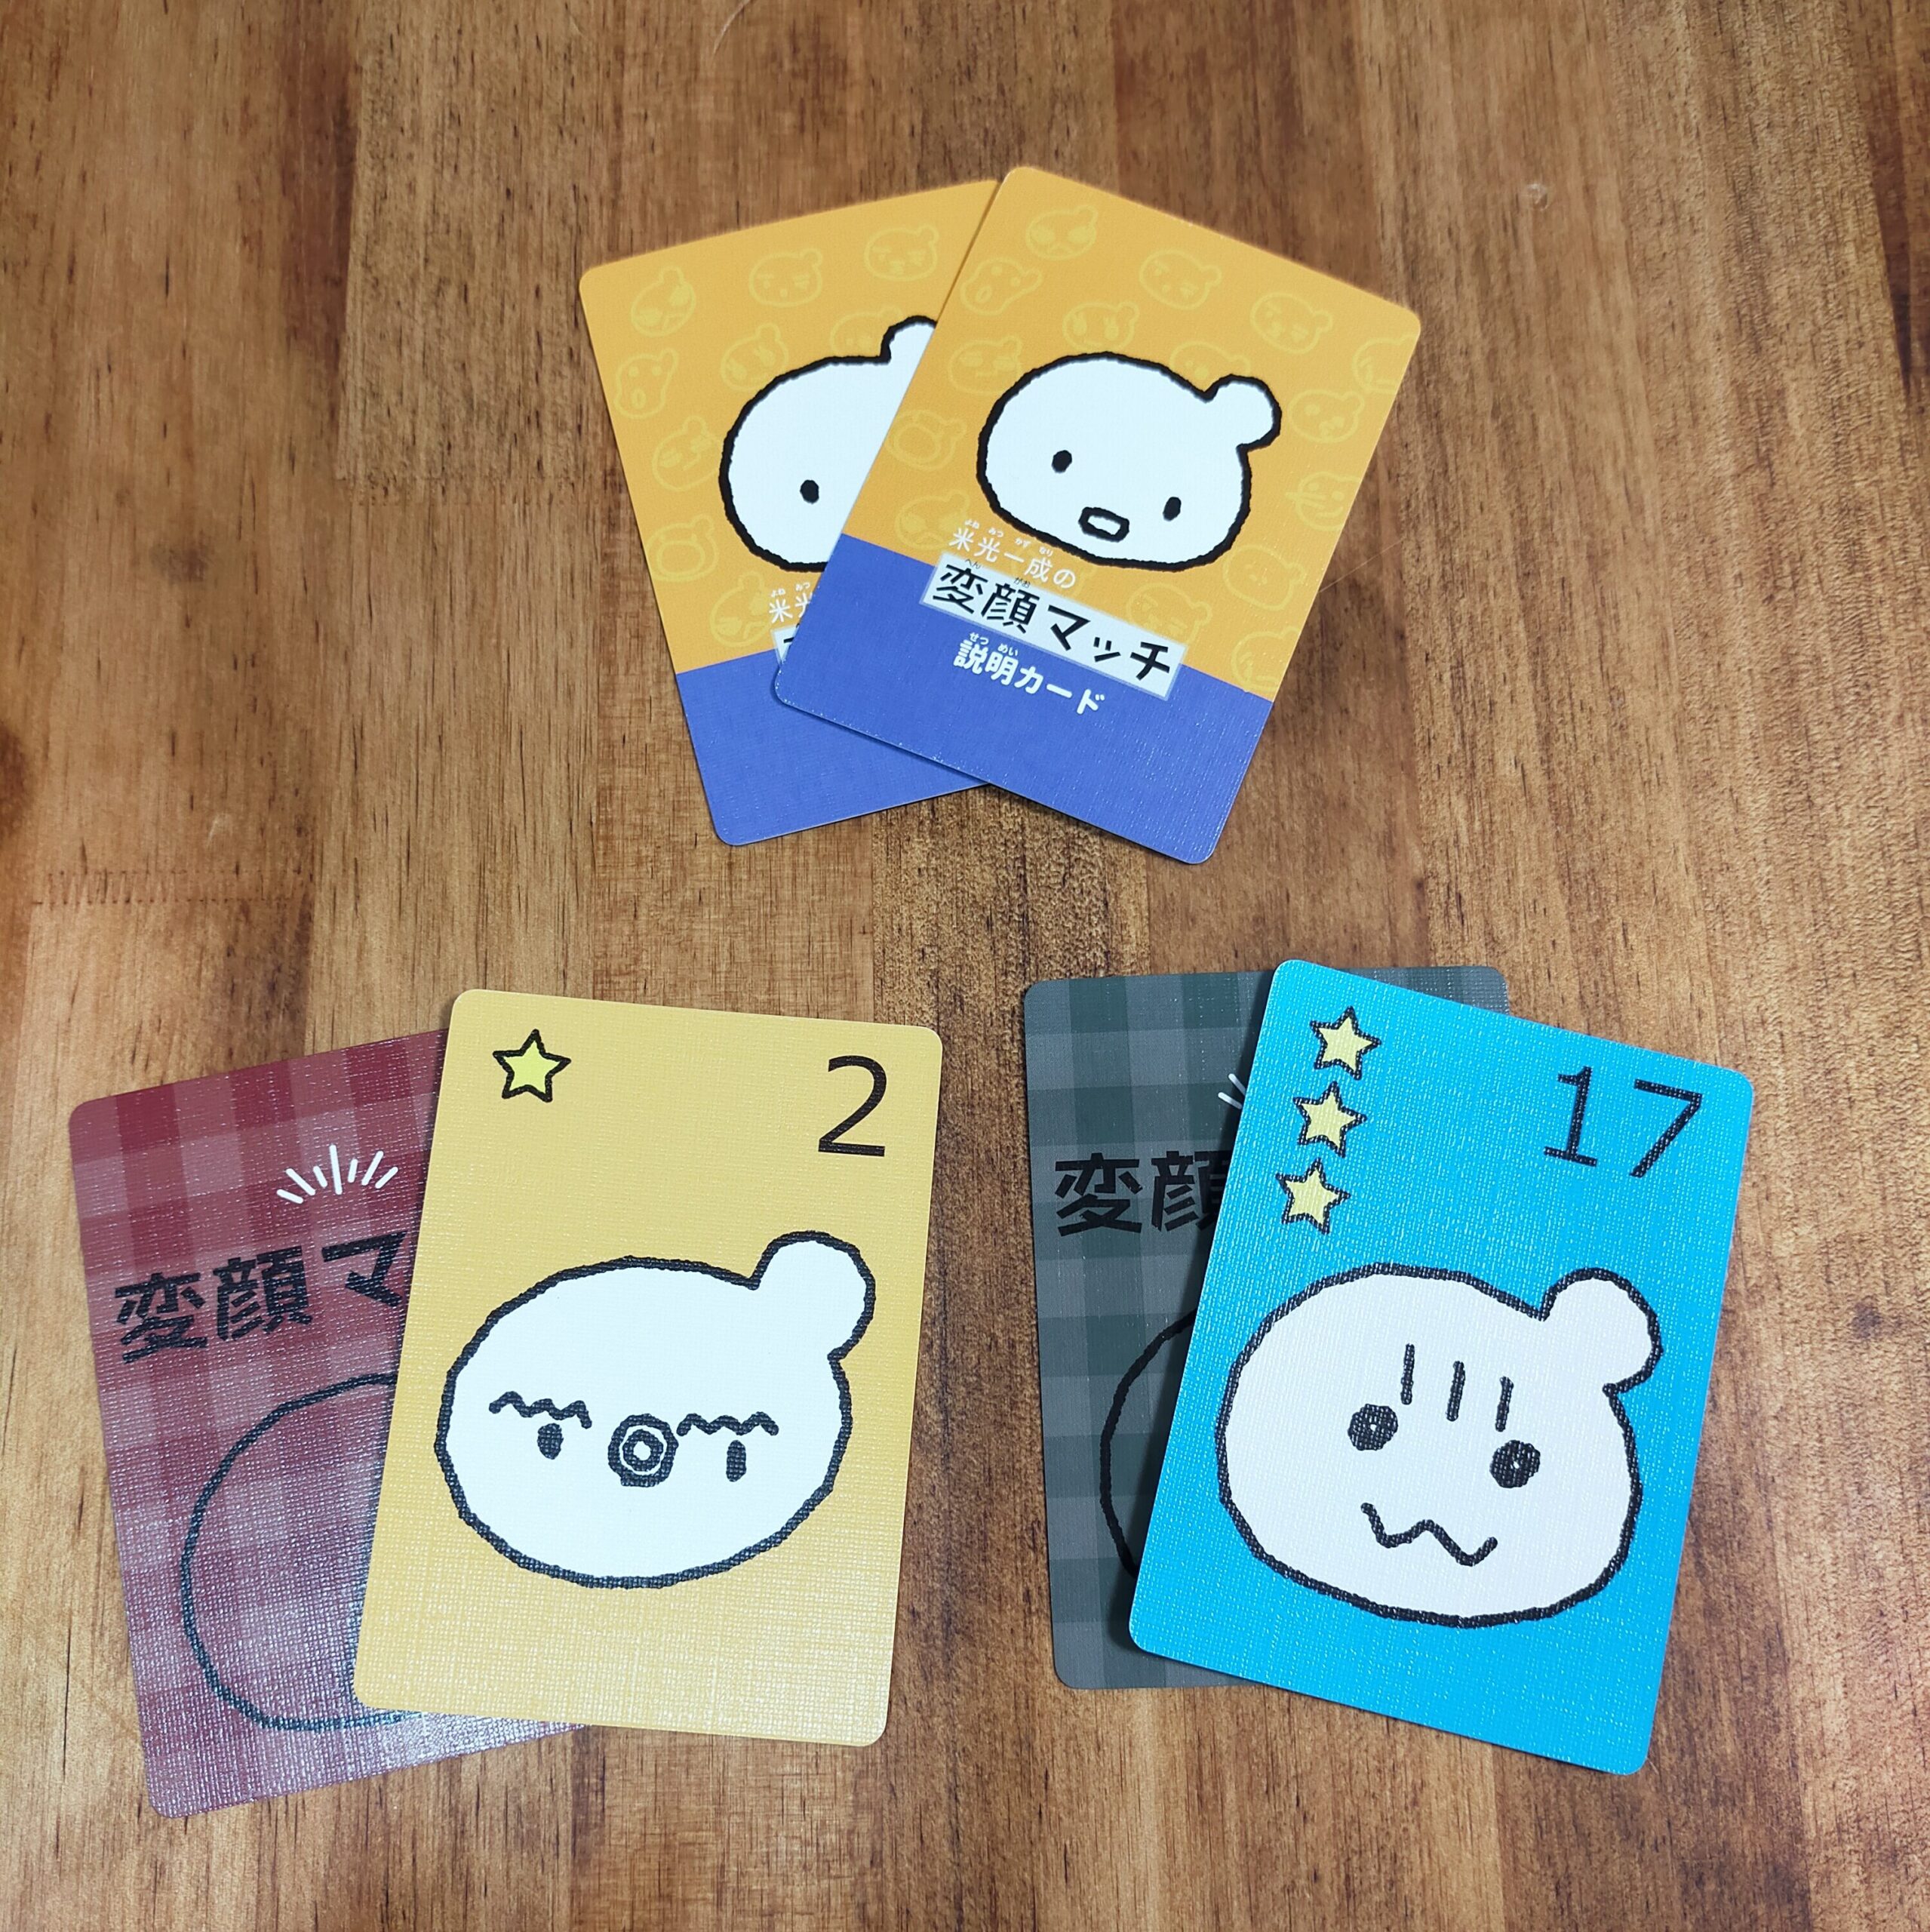 変顔マッチ カードゲーム 知育玩具 ダイソー 新品未使用 爆売りセール開催中